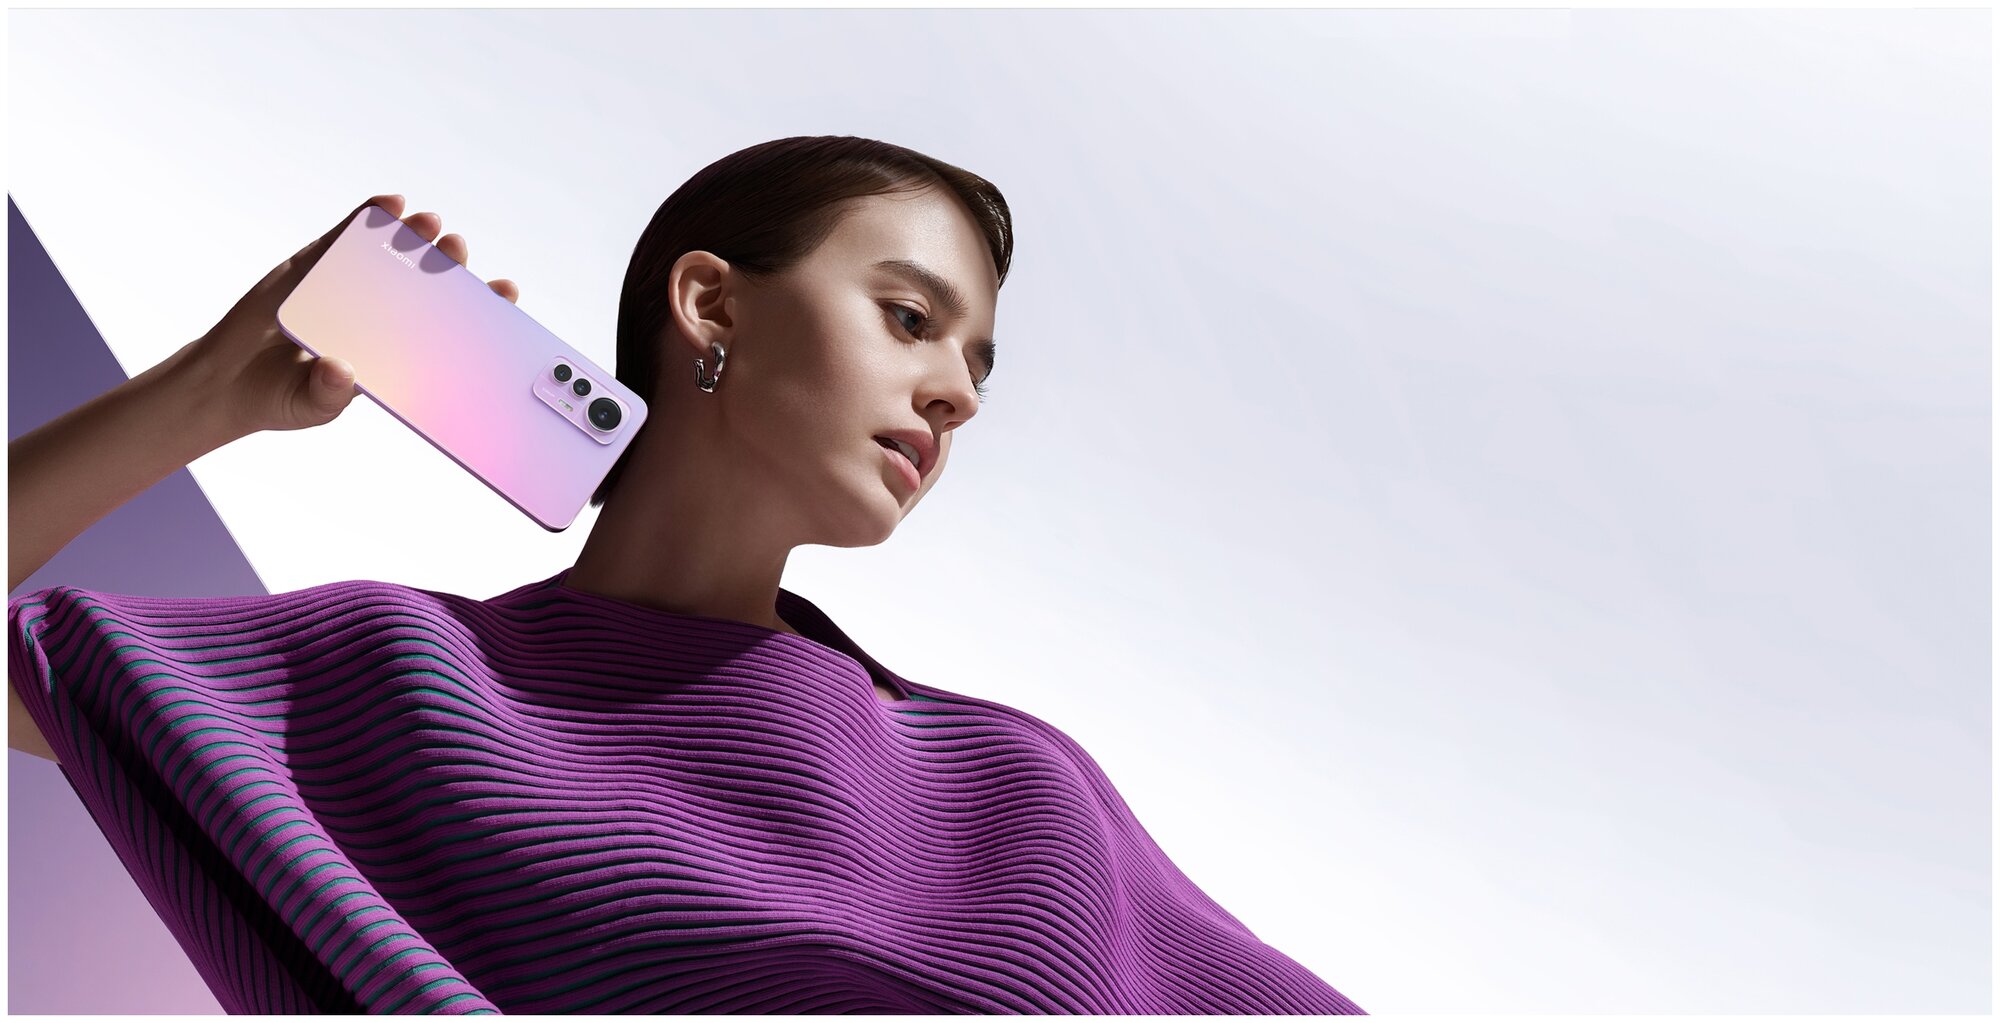 картинка Xiaomi 12 Lite 8/128 ГБ RU, Dual nano SIM, светло-розовый от магазина Симпатия